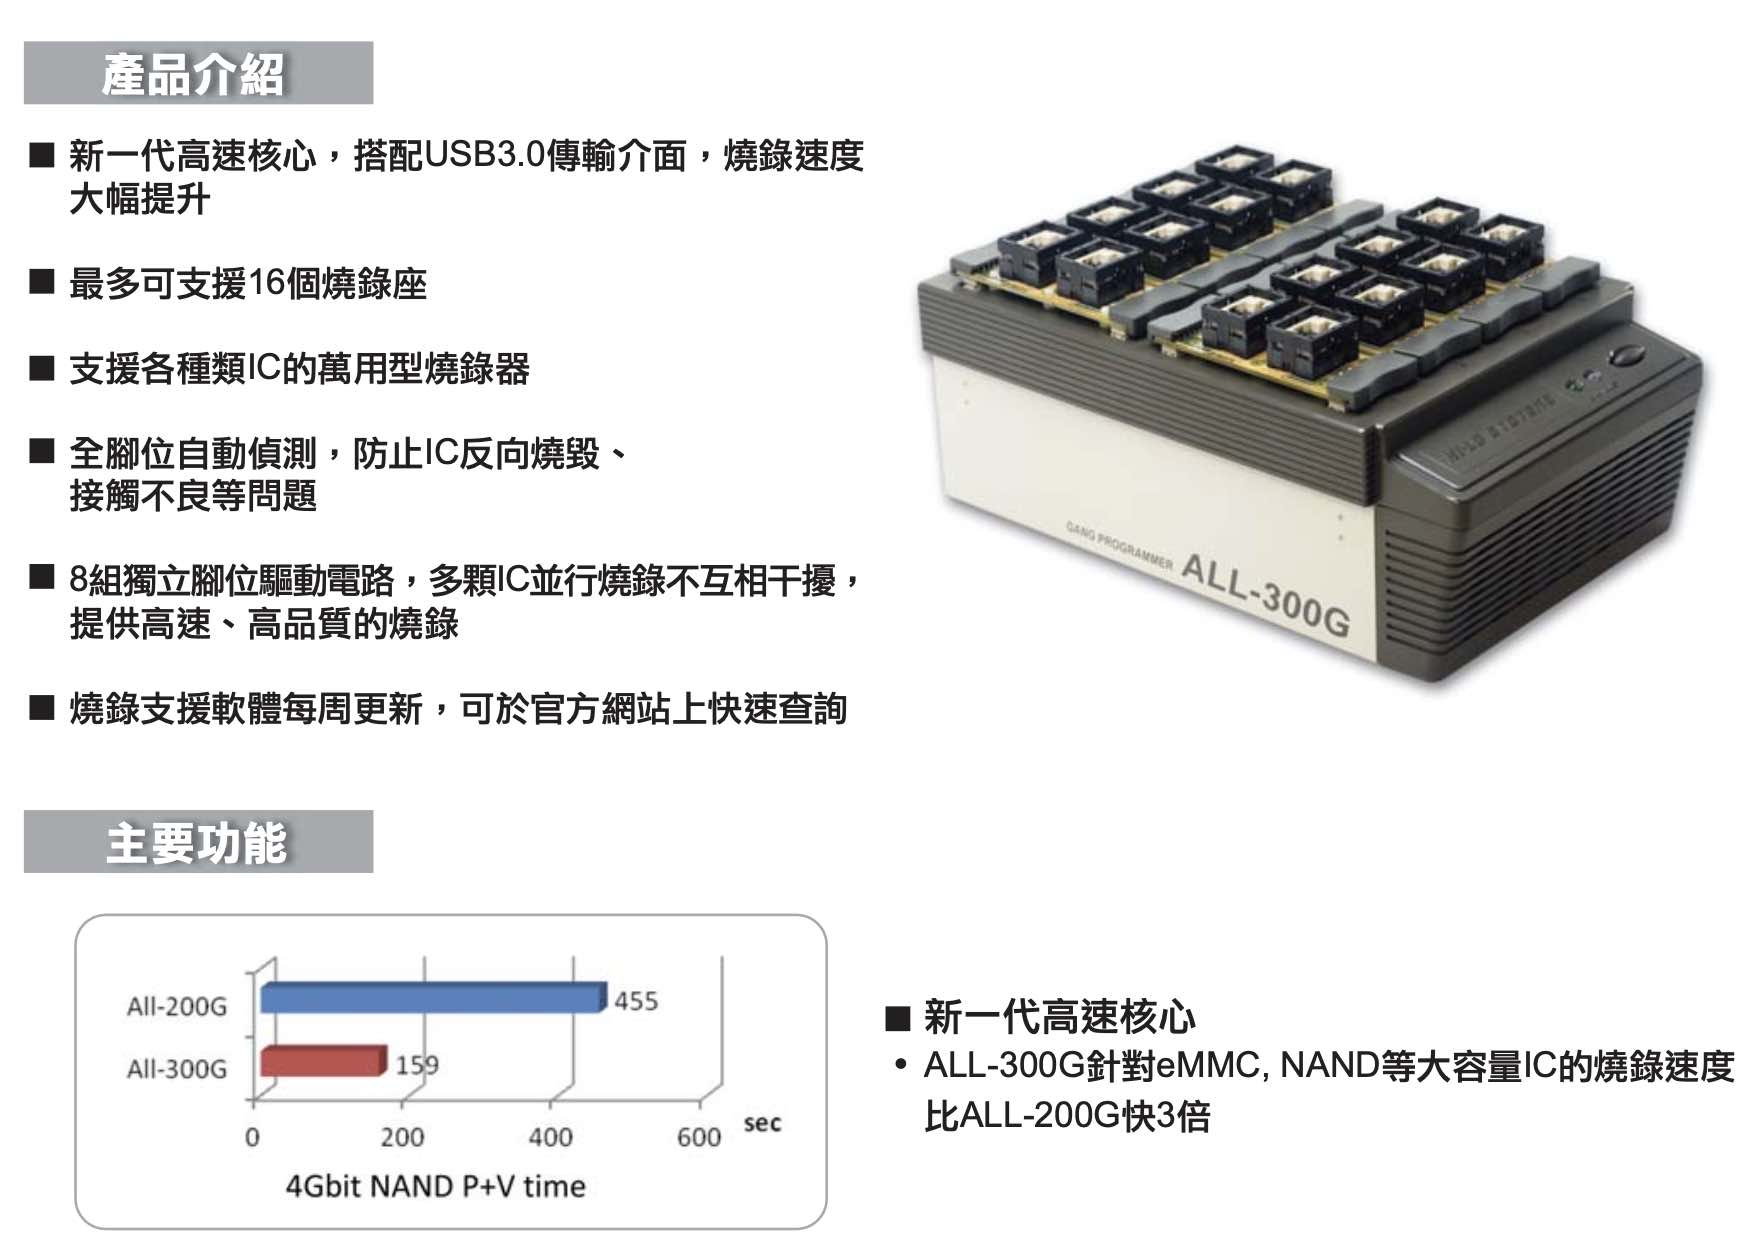 量產型燒錄器 ALL-300G(图2)